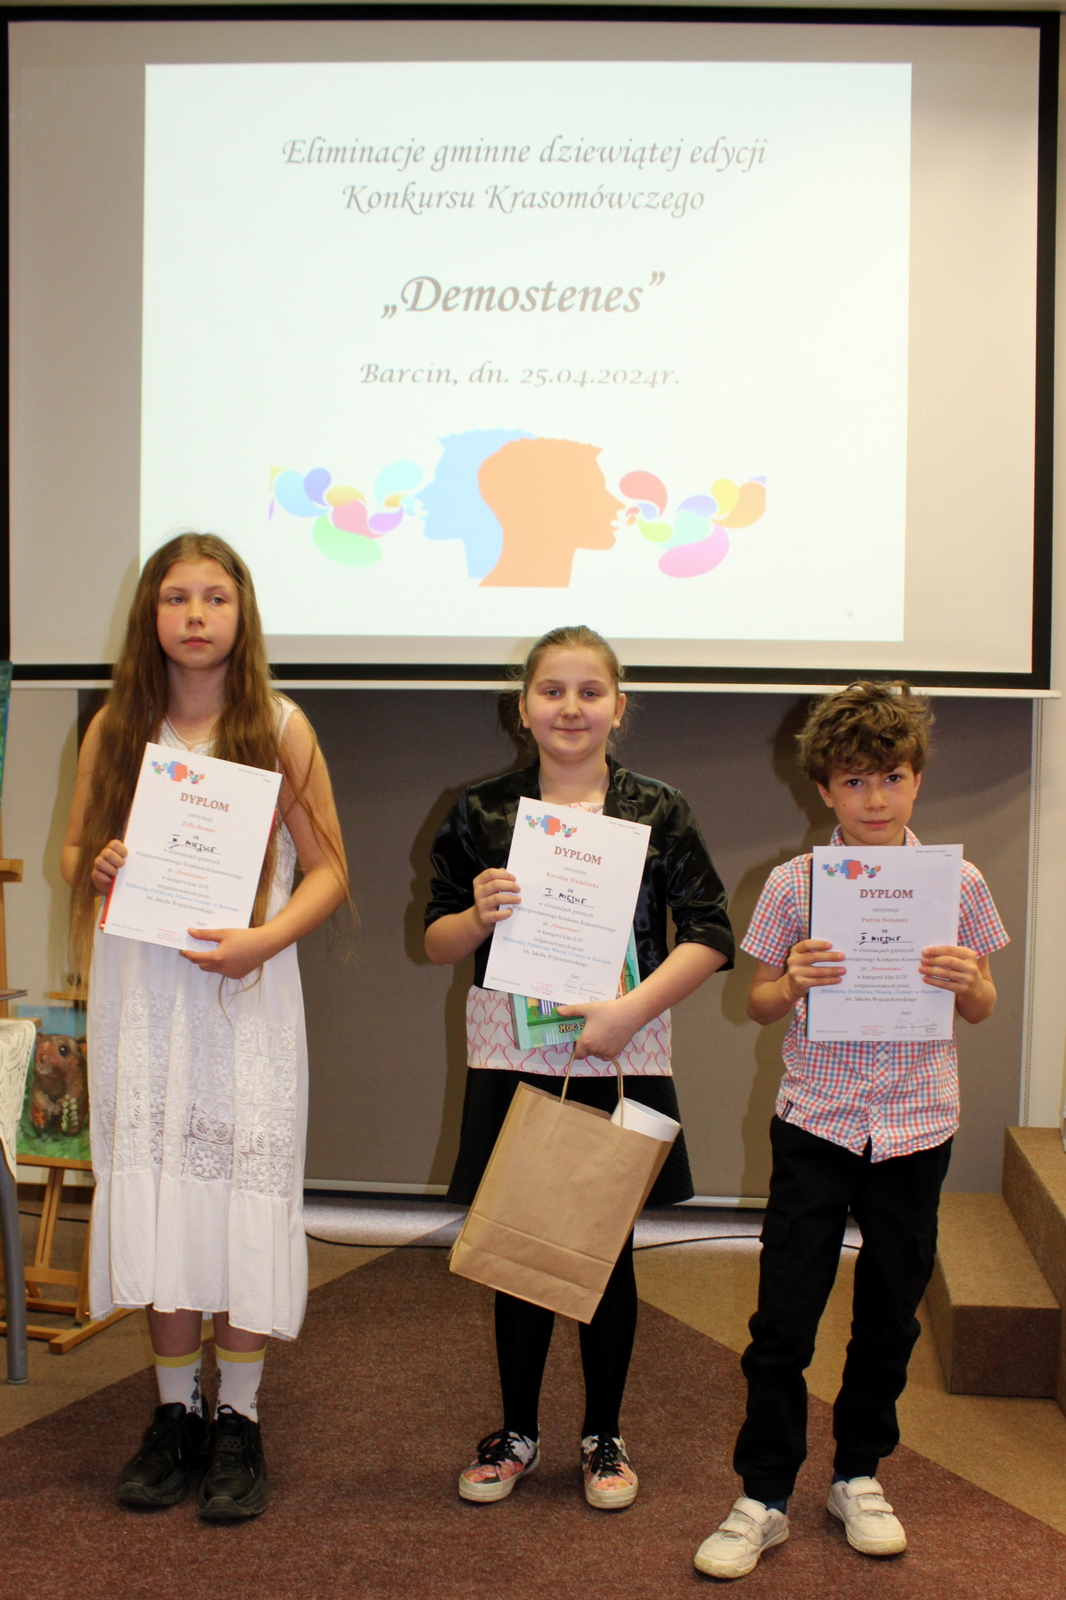 Troje uczestników konkursu trzymających wręczone nagrody oraz dyplomy, za nimi wyświetlany jest plakat informujący o konkursie.